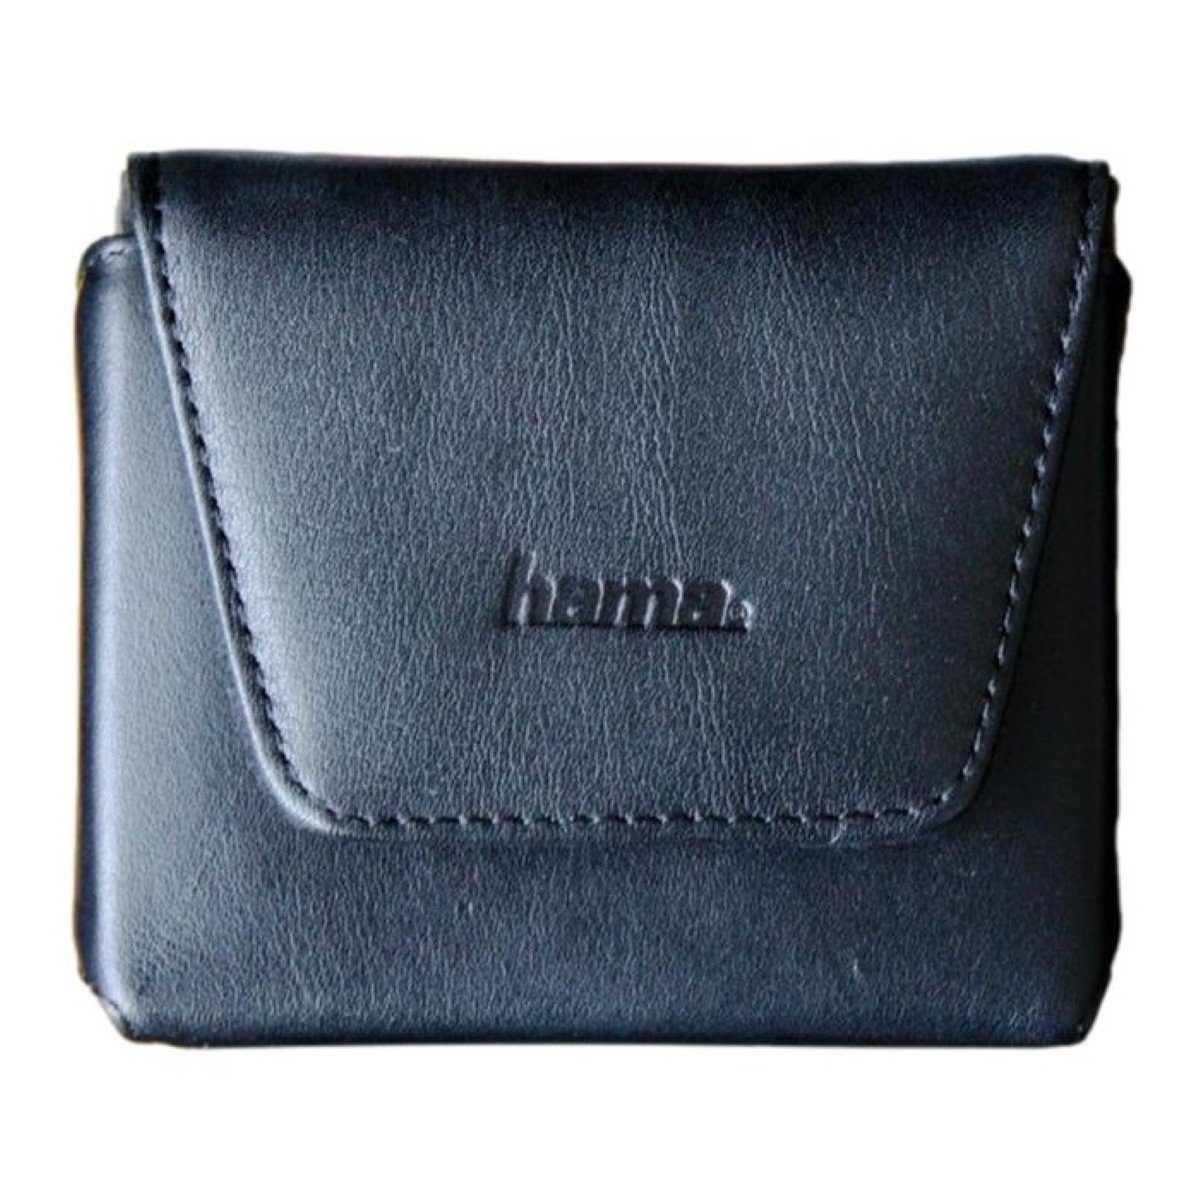 Hama Navigationstasche Navi-Tasche GPS Case Hülle Etui Cover Bag Leder,  passend für 3,5" Navigation, Schutz vor Kratzern, Schmutz und Feuchtigkeit